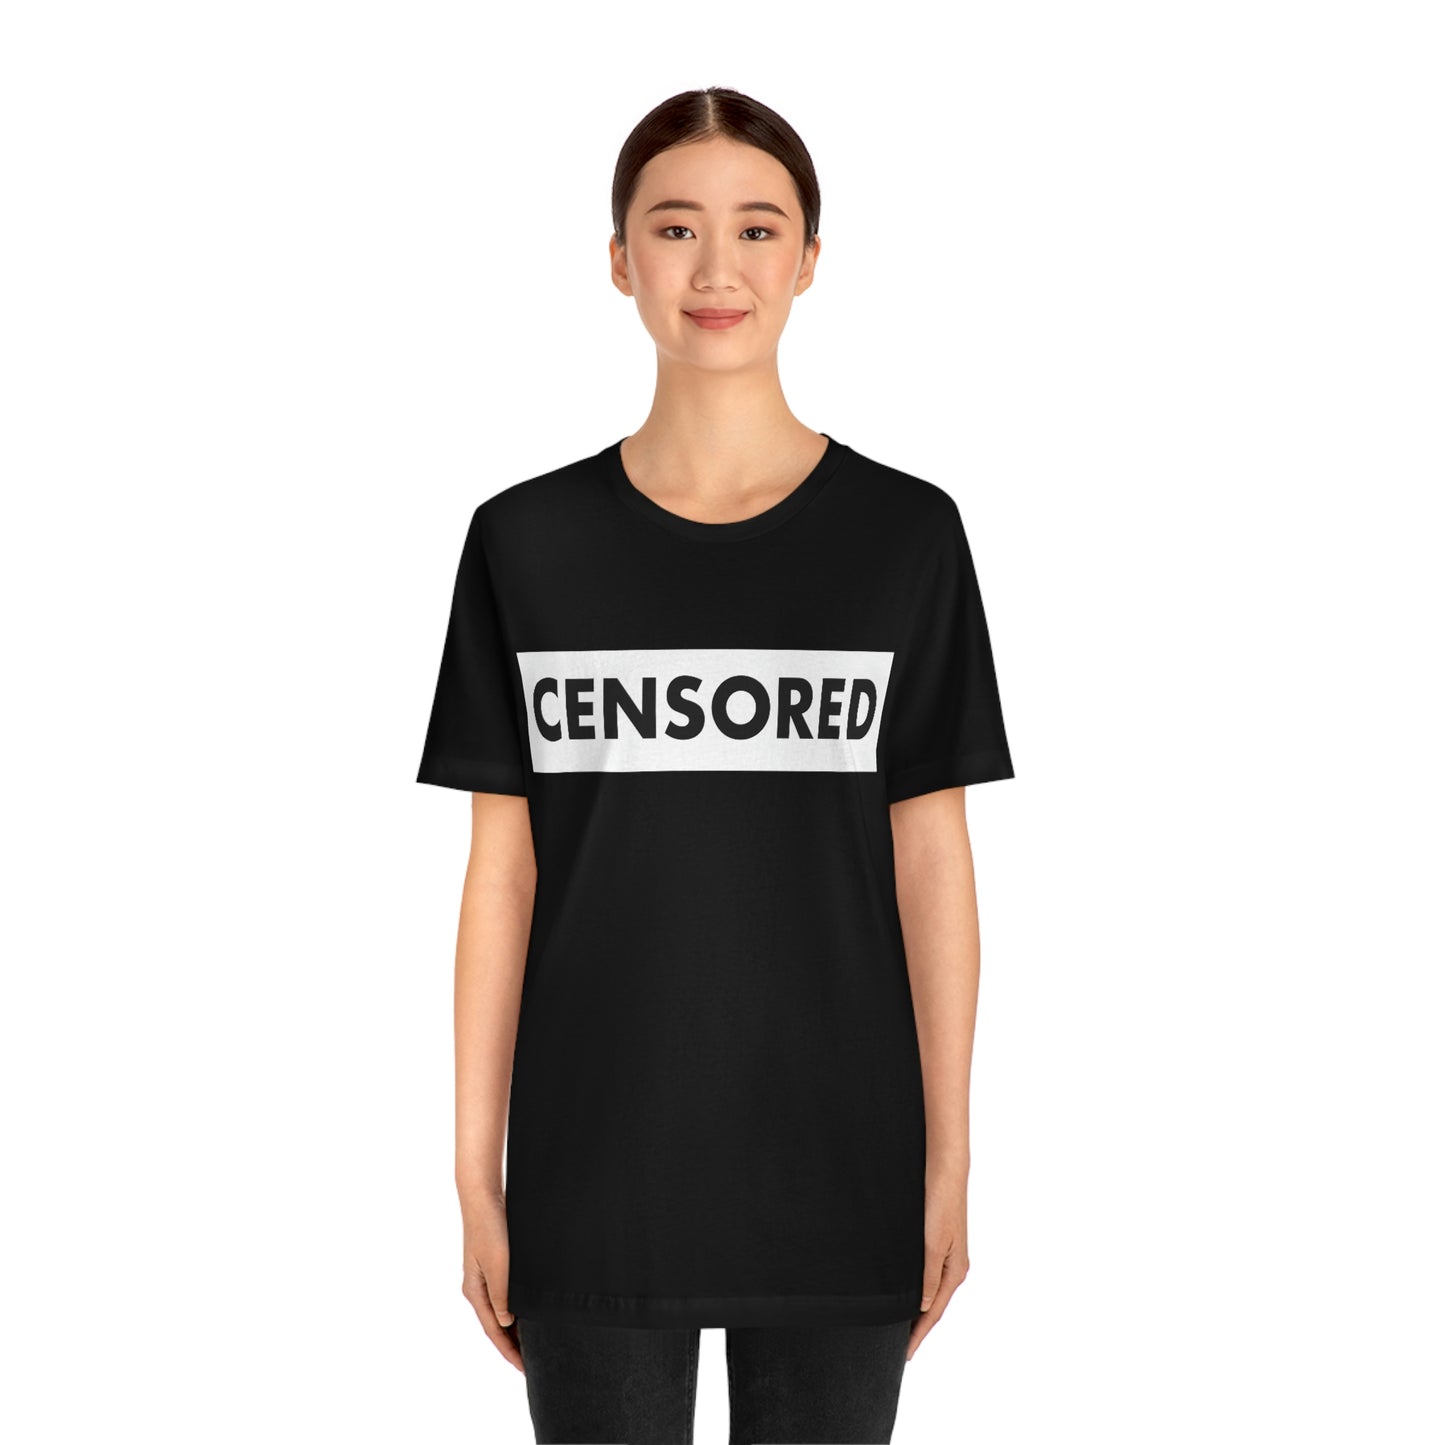 Censored Unisex Jersey Short Sleeve Tee